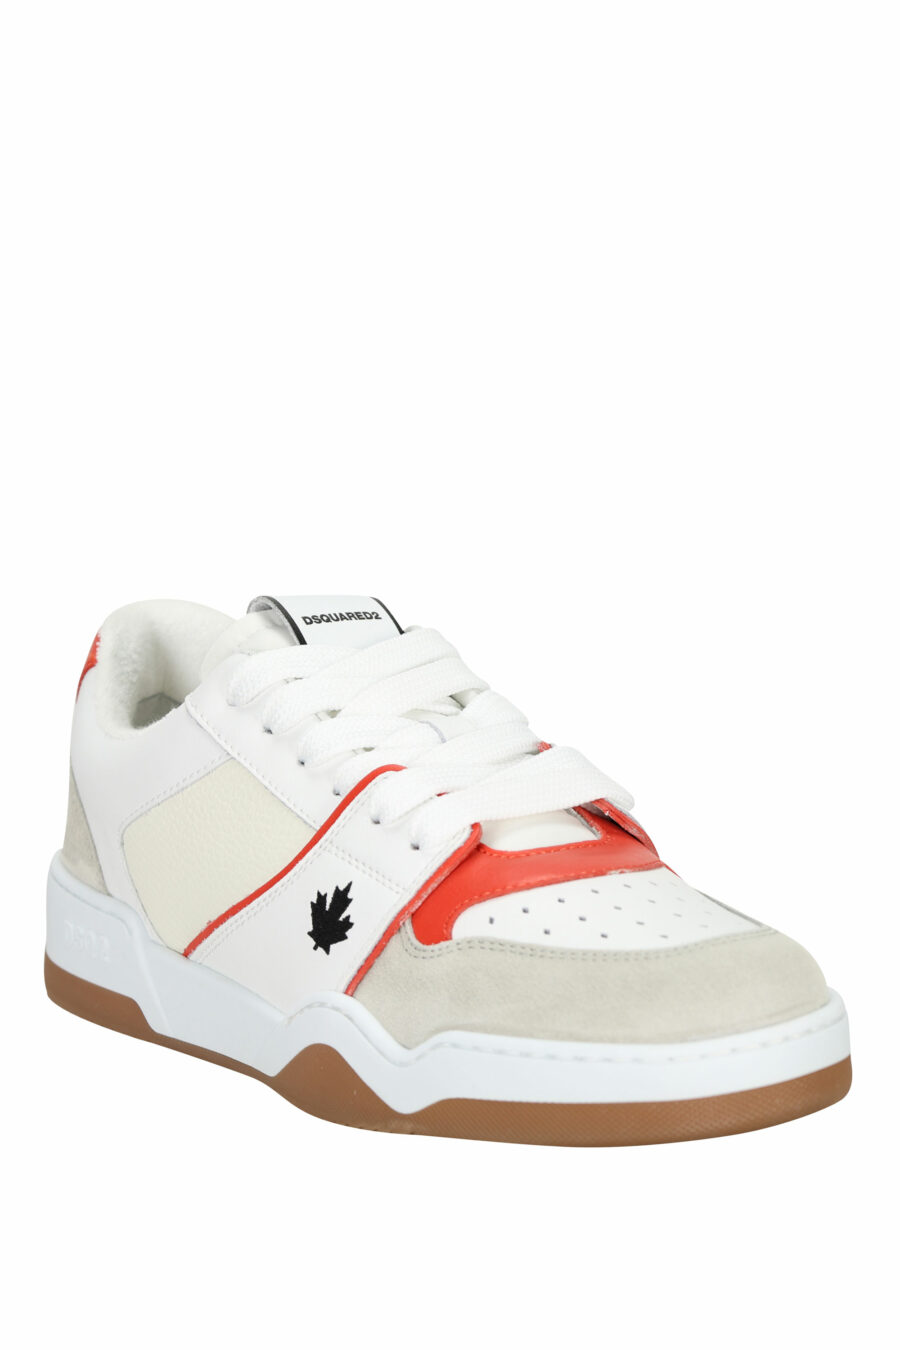 Zapatillas blancas "spyker" con rojo y gris - 8055777301814 1